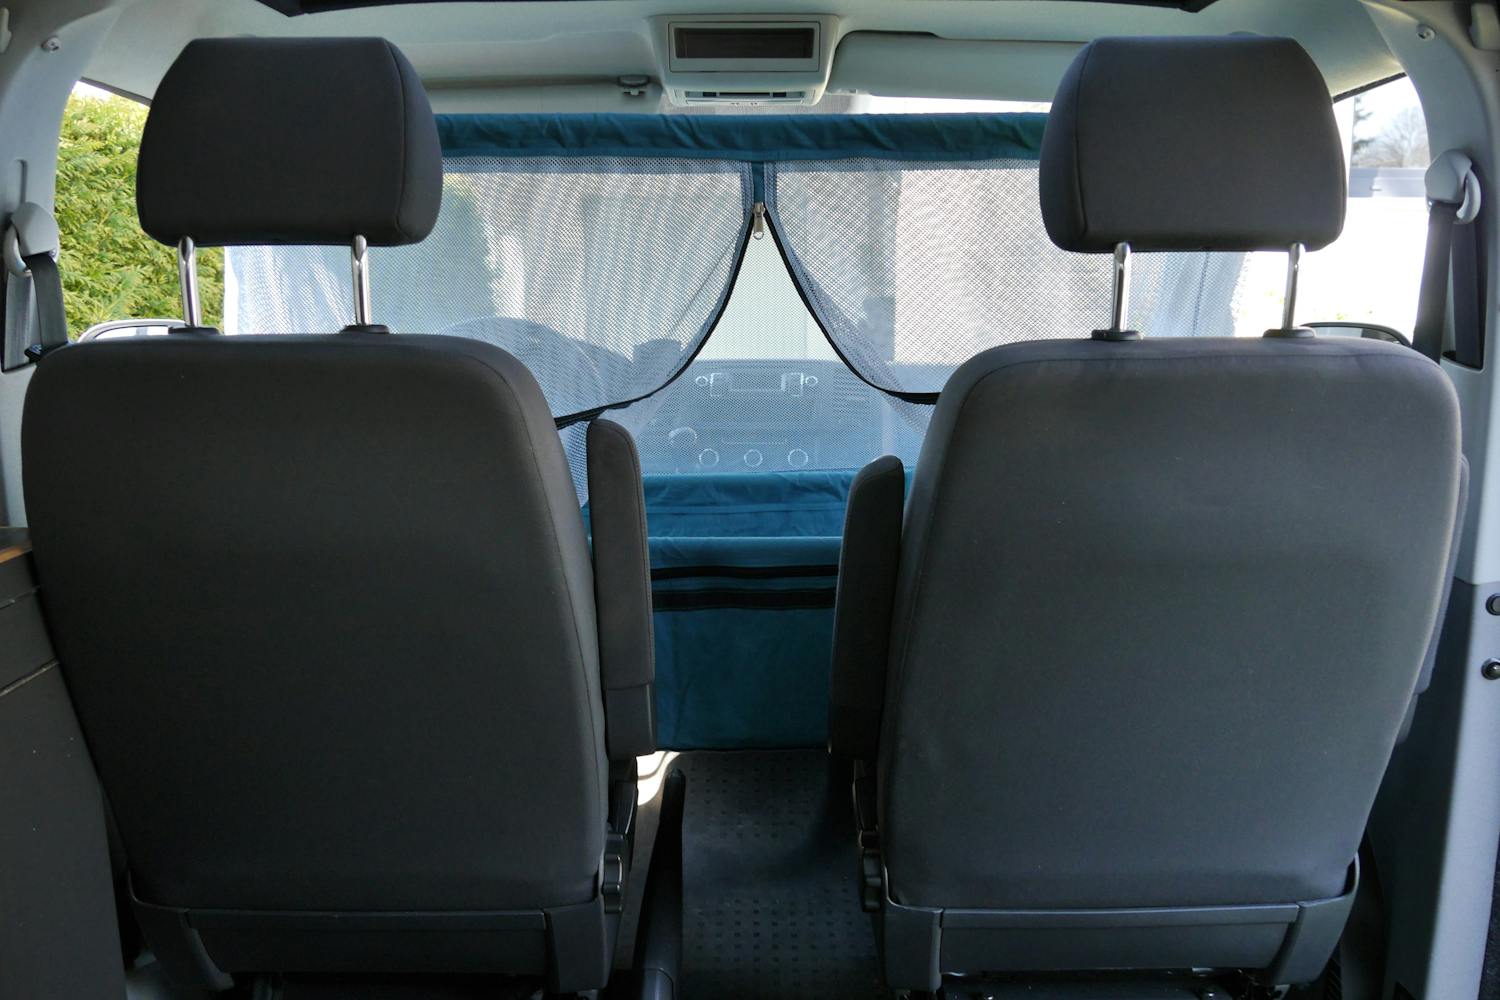 Reisebett VanKid von KiLe für VW T6.1, T6, T5 und T4 (auch passend für  Mercedes Benz Vito oder Viano)